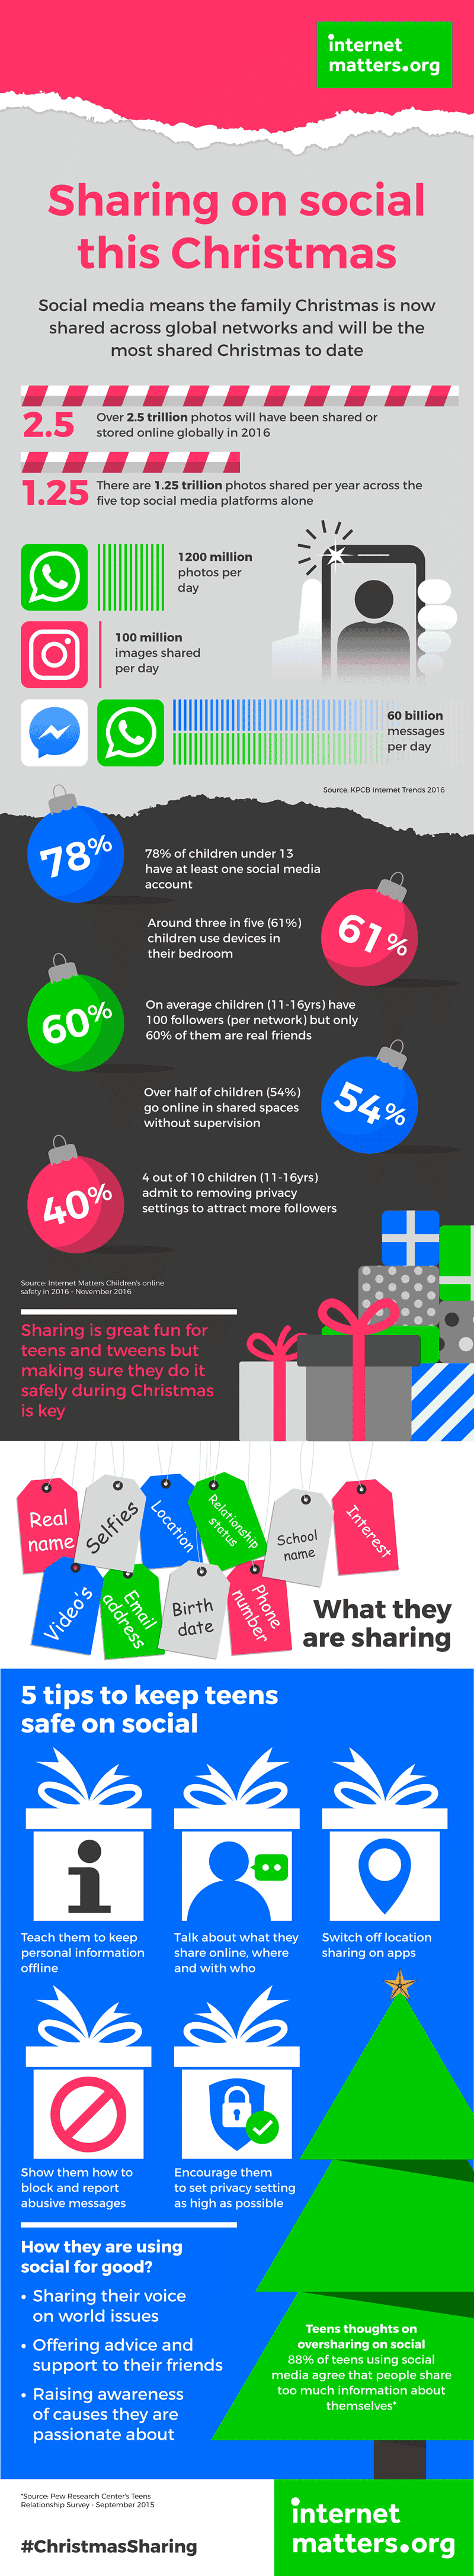 Alors que ce Noël devrait être le plus connecté de tous les temps, le milliard d'images de 7 devrait être partagé le mois de décembre prochain sur les réseaux sociaux. Consultez d'autres statistiques sur le partage social et des conseils pour aider les enfants à partager en toute sécurité en ligne.